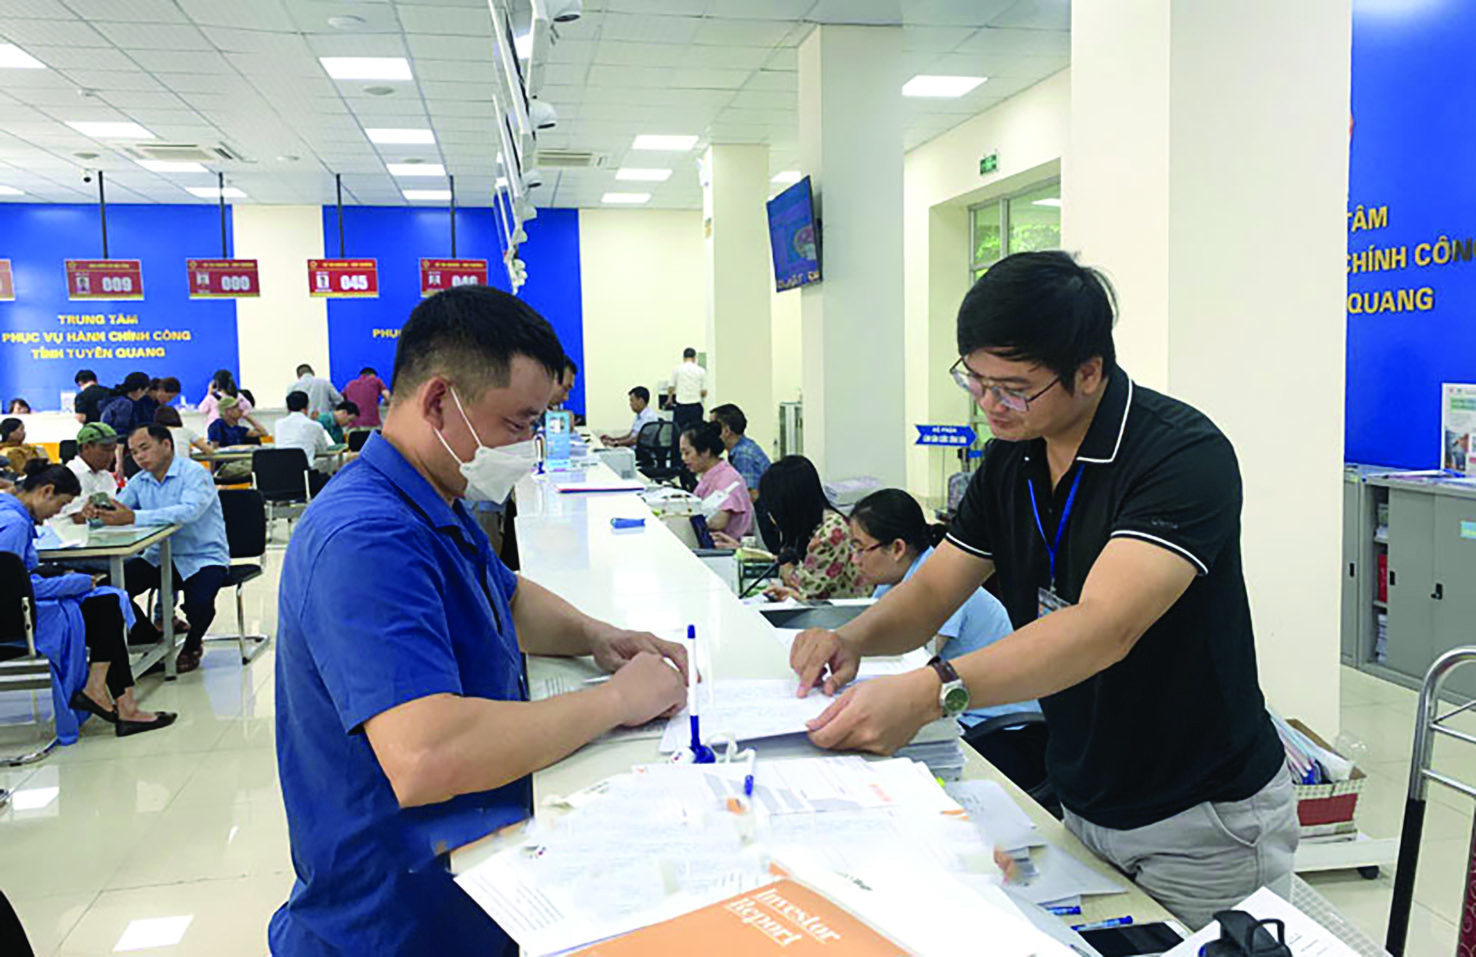  Hướng dẫn người dân thực hiện các thủ tục hành chính tại Trung tâm hành chính công của tỉnh Tuyên Quang